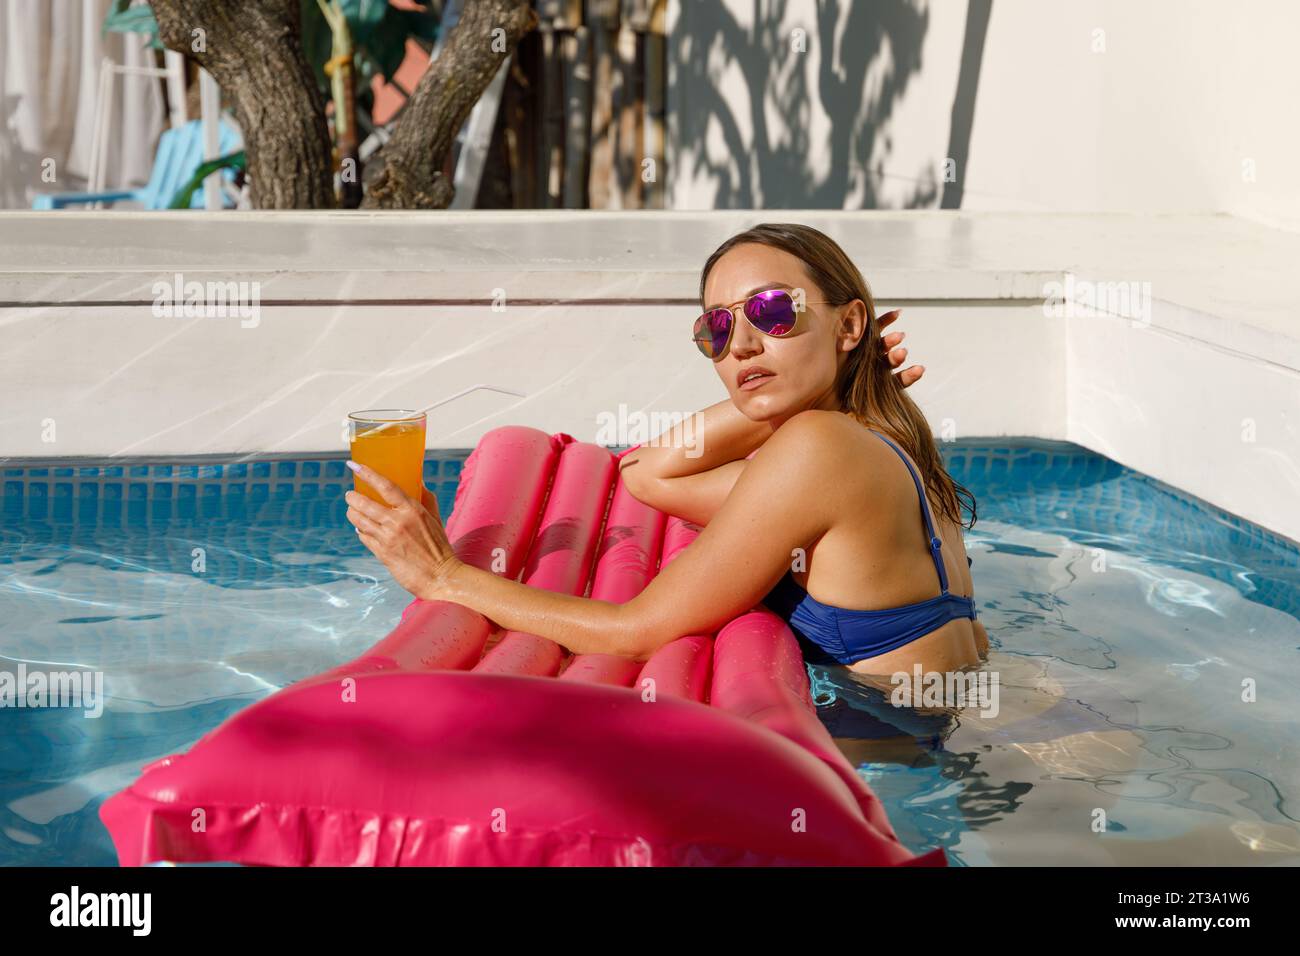 Chic Summer Fun avec matelas gonflable Banque D'Images